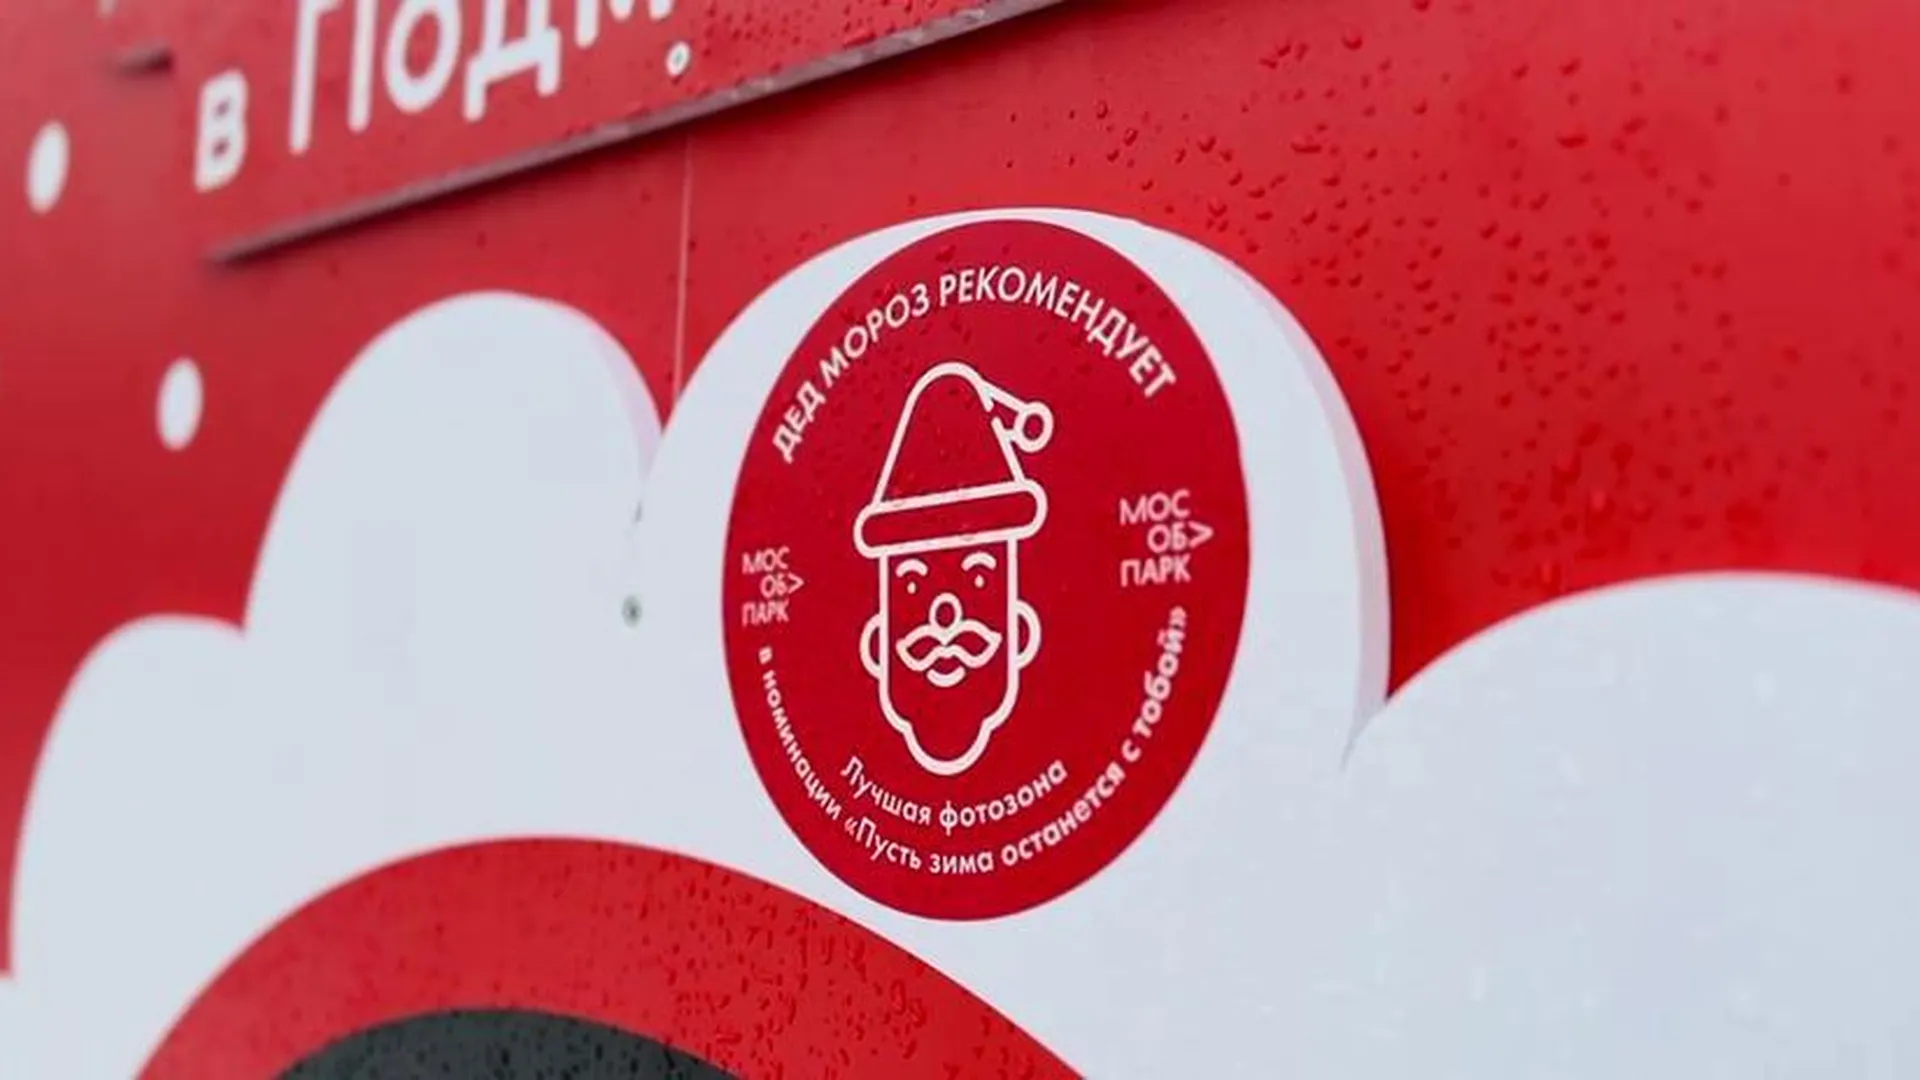 Фотозона Центрального парка Реутова получила знак «Дед Мороз рекомендует»